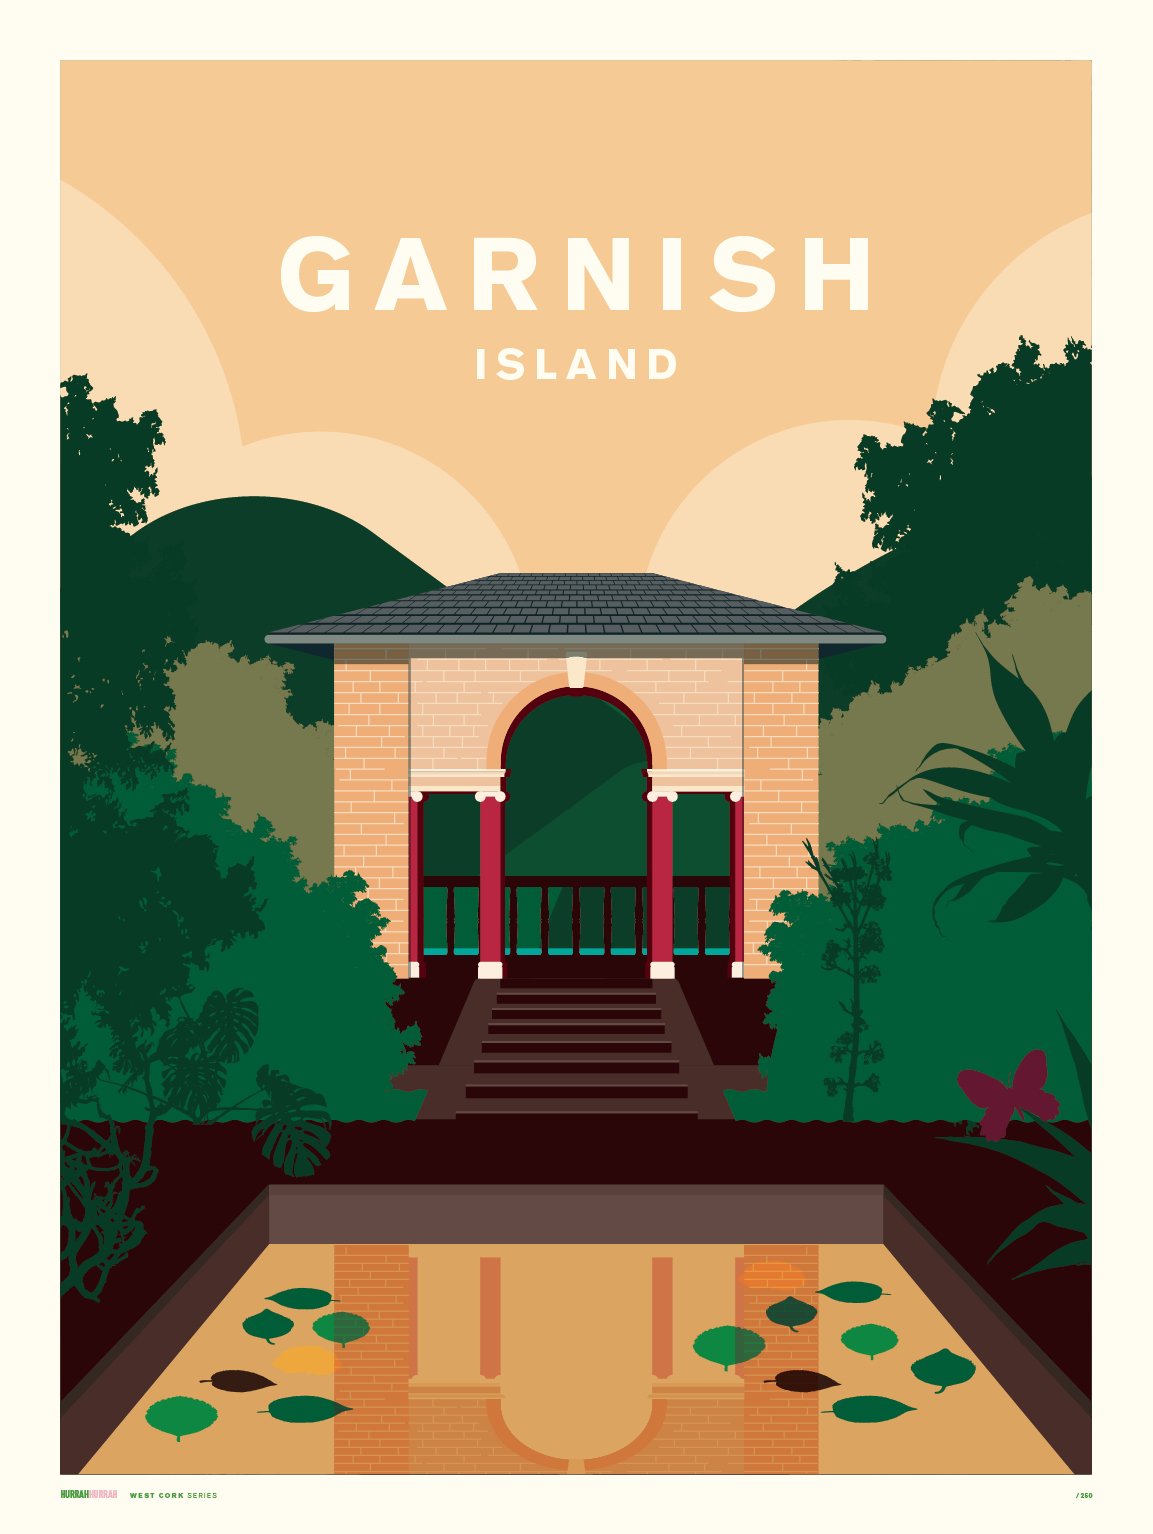 Garnish Island